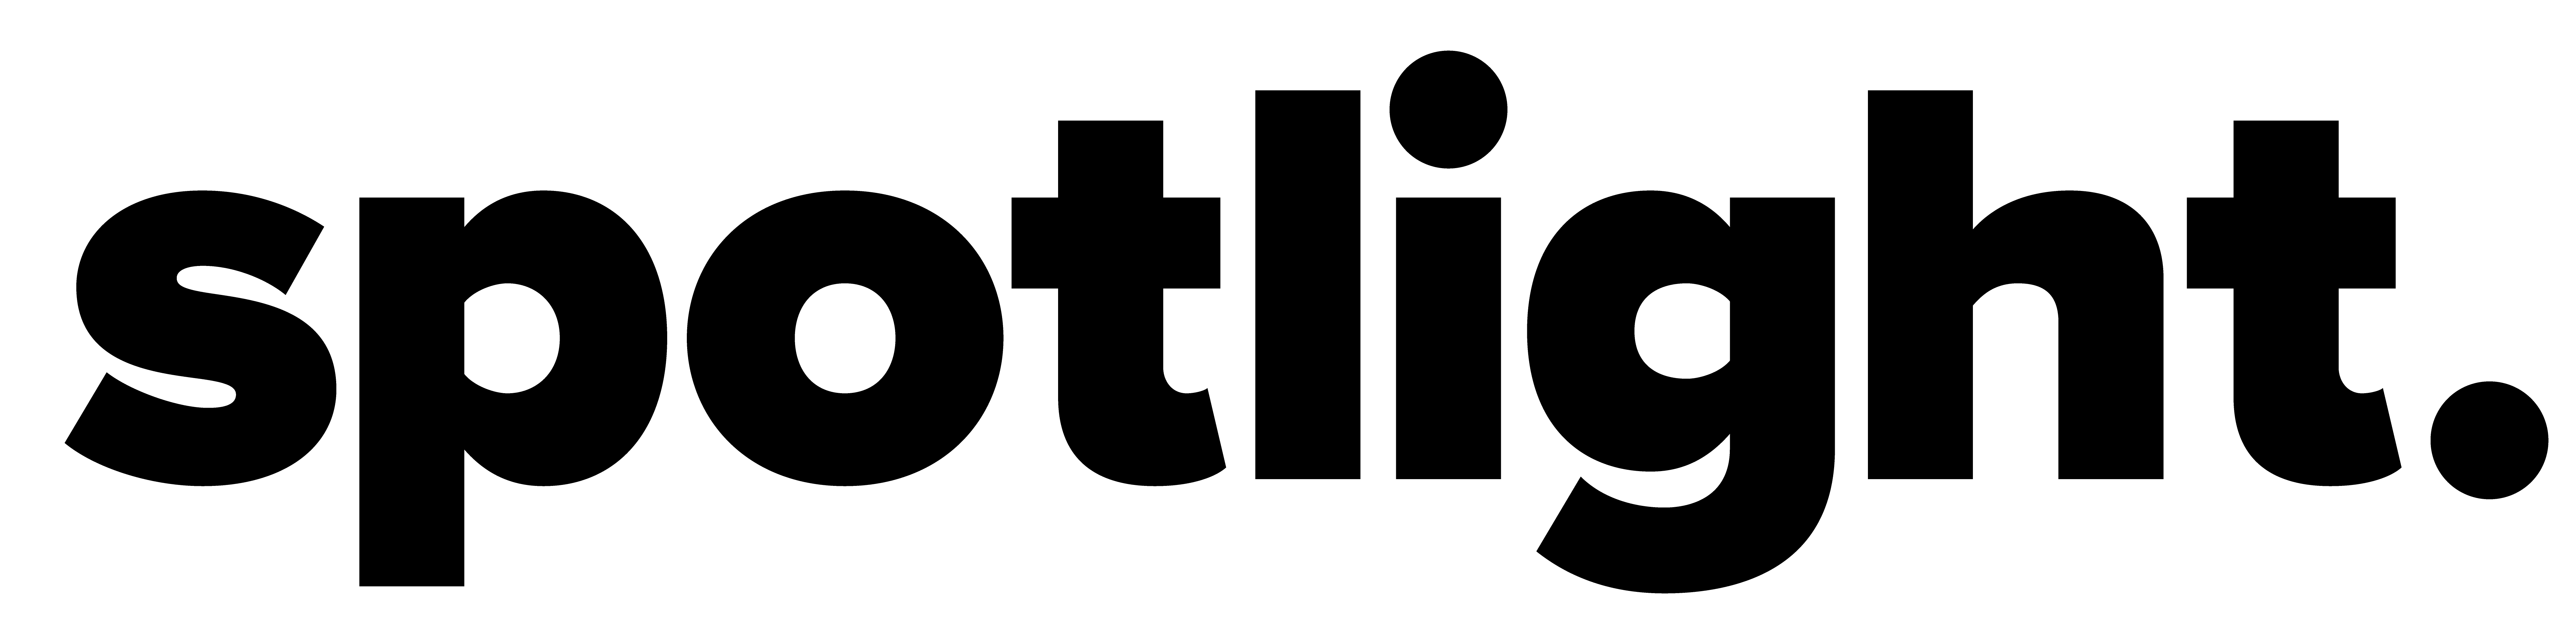 spotlight logo all black